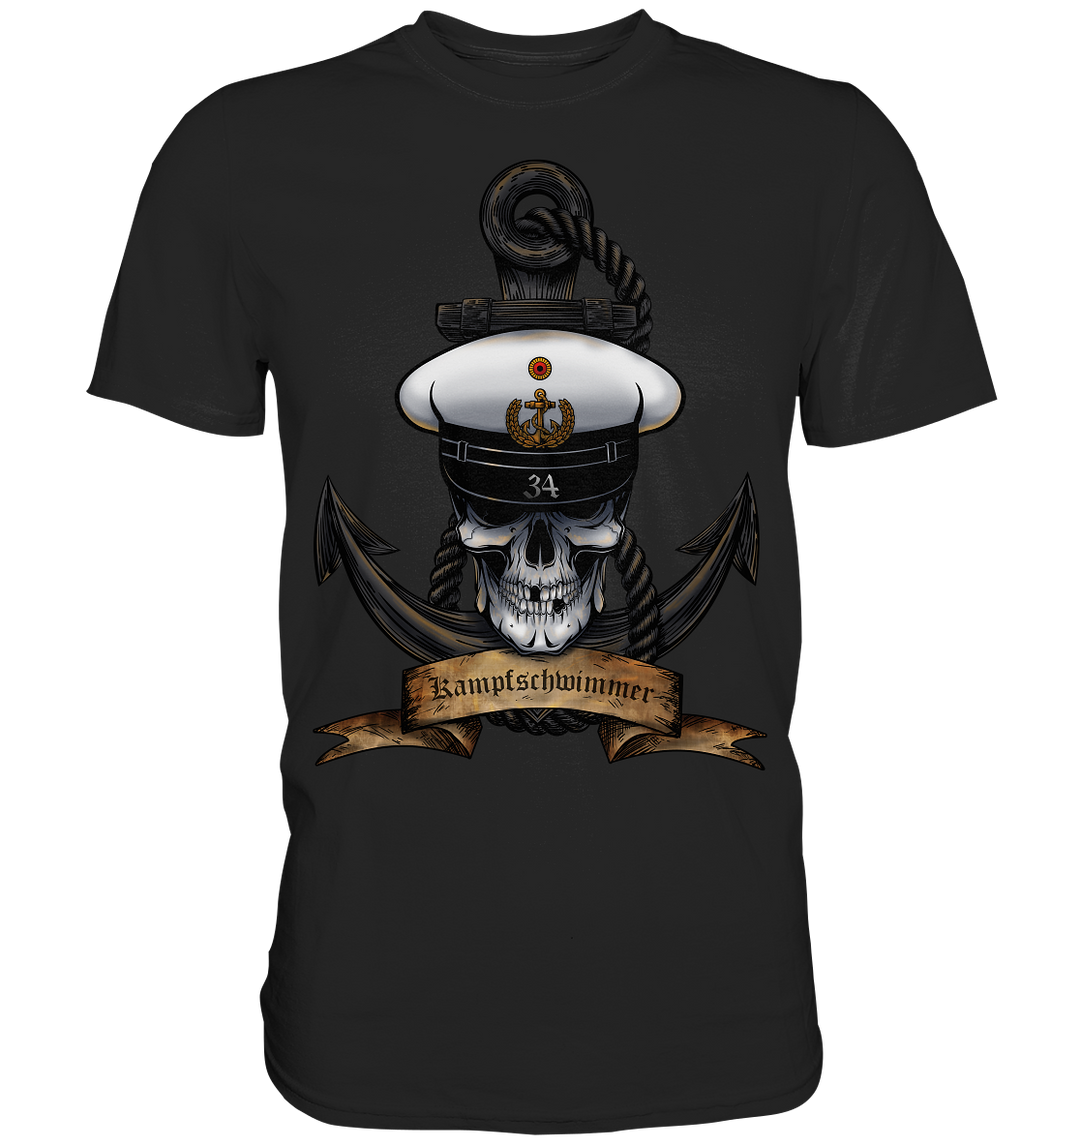 "Marine 34 - Kampfschwimmer" - Premium Shirt